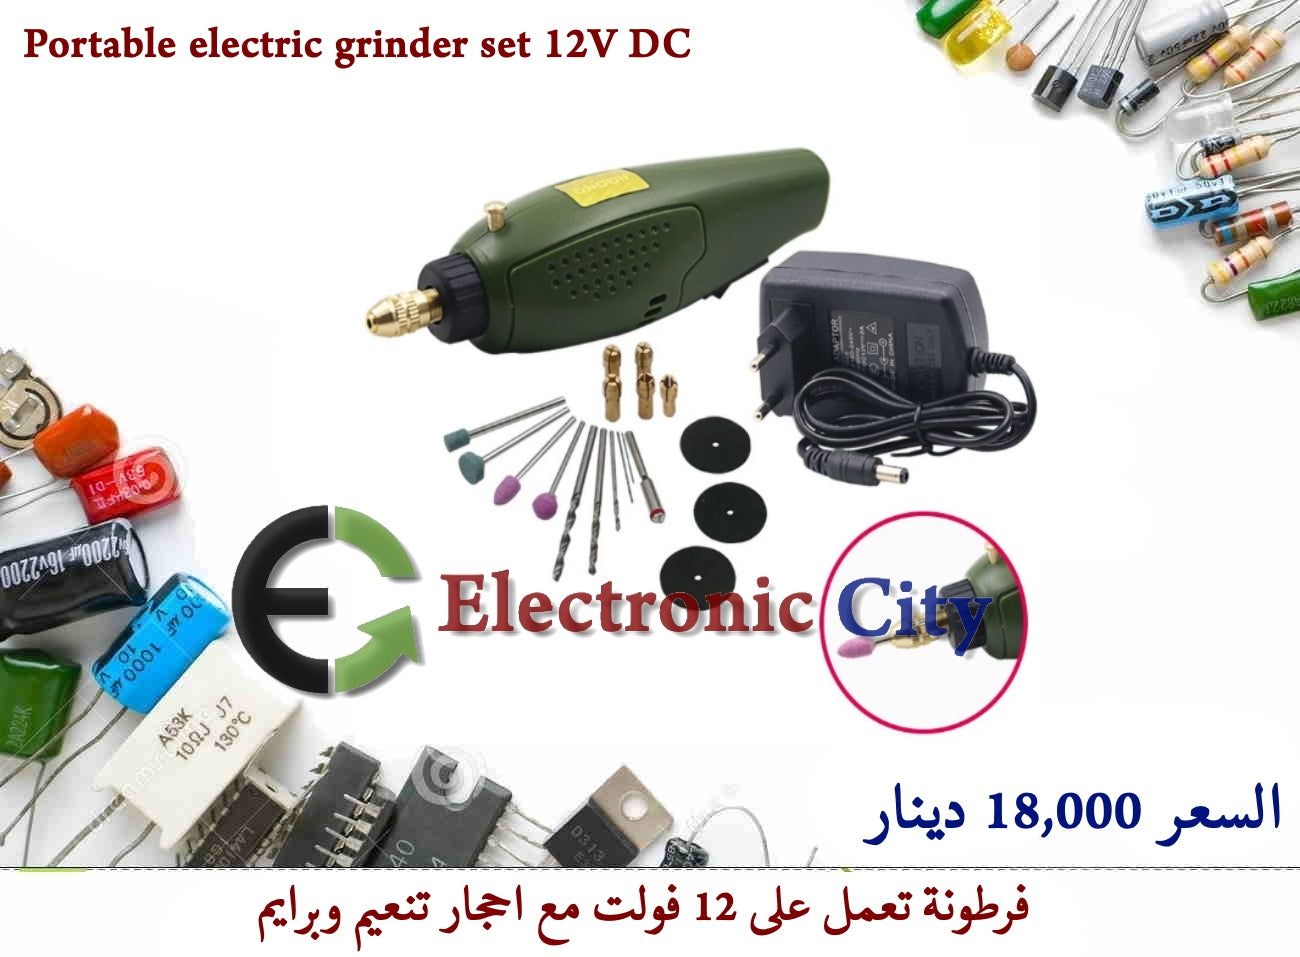 Portable electric grinder set 12V DC